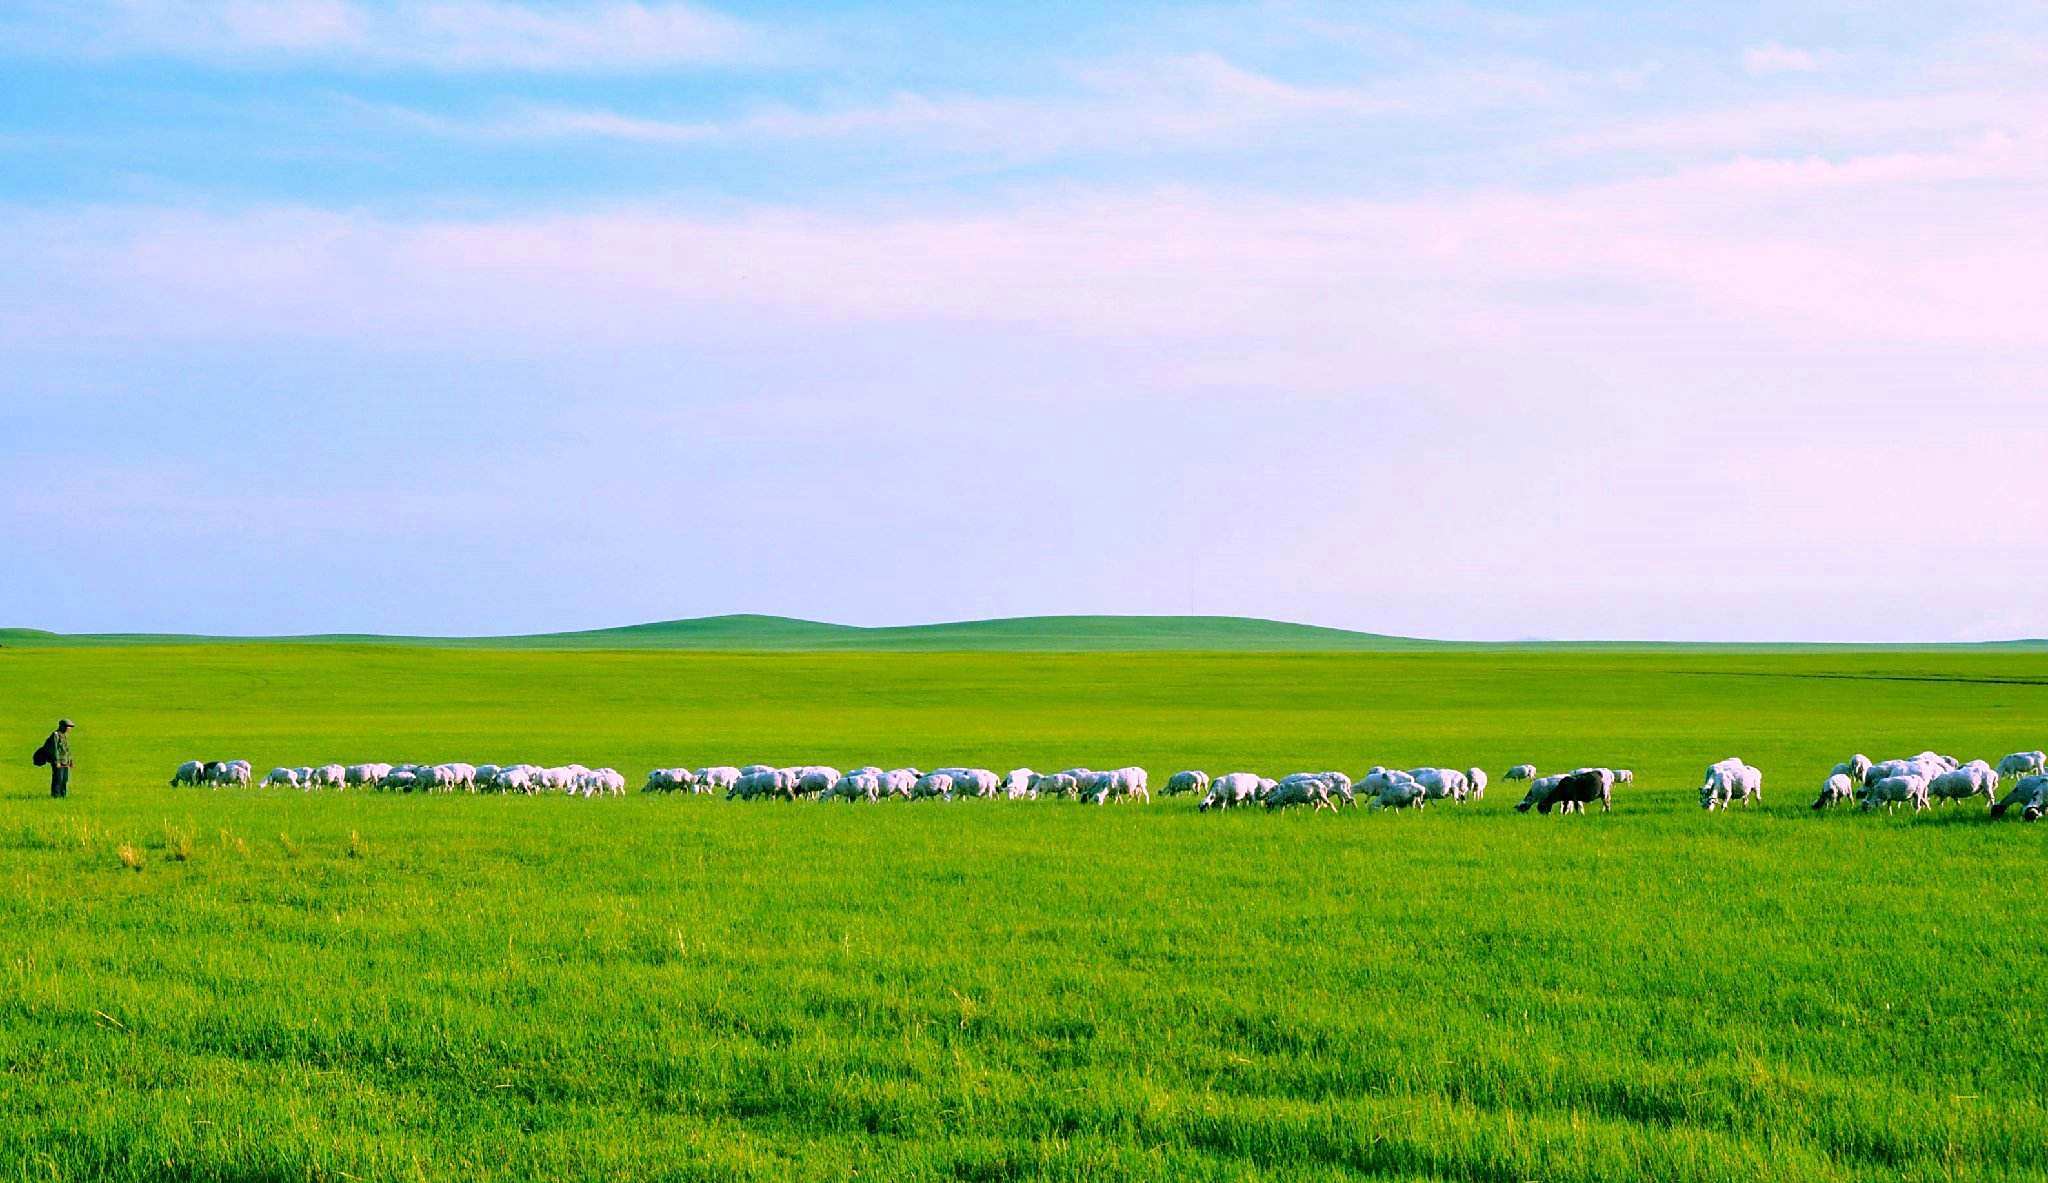 出去旅行,感受风吹草地见牛羊.